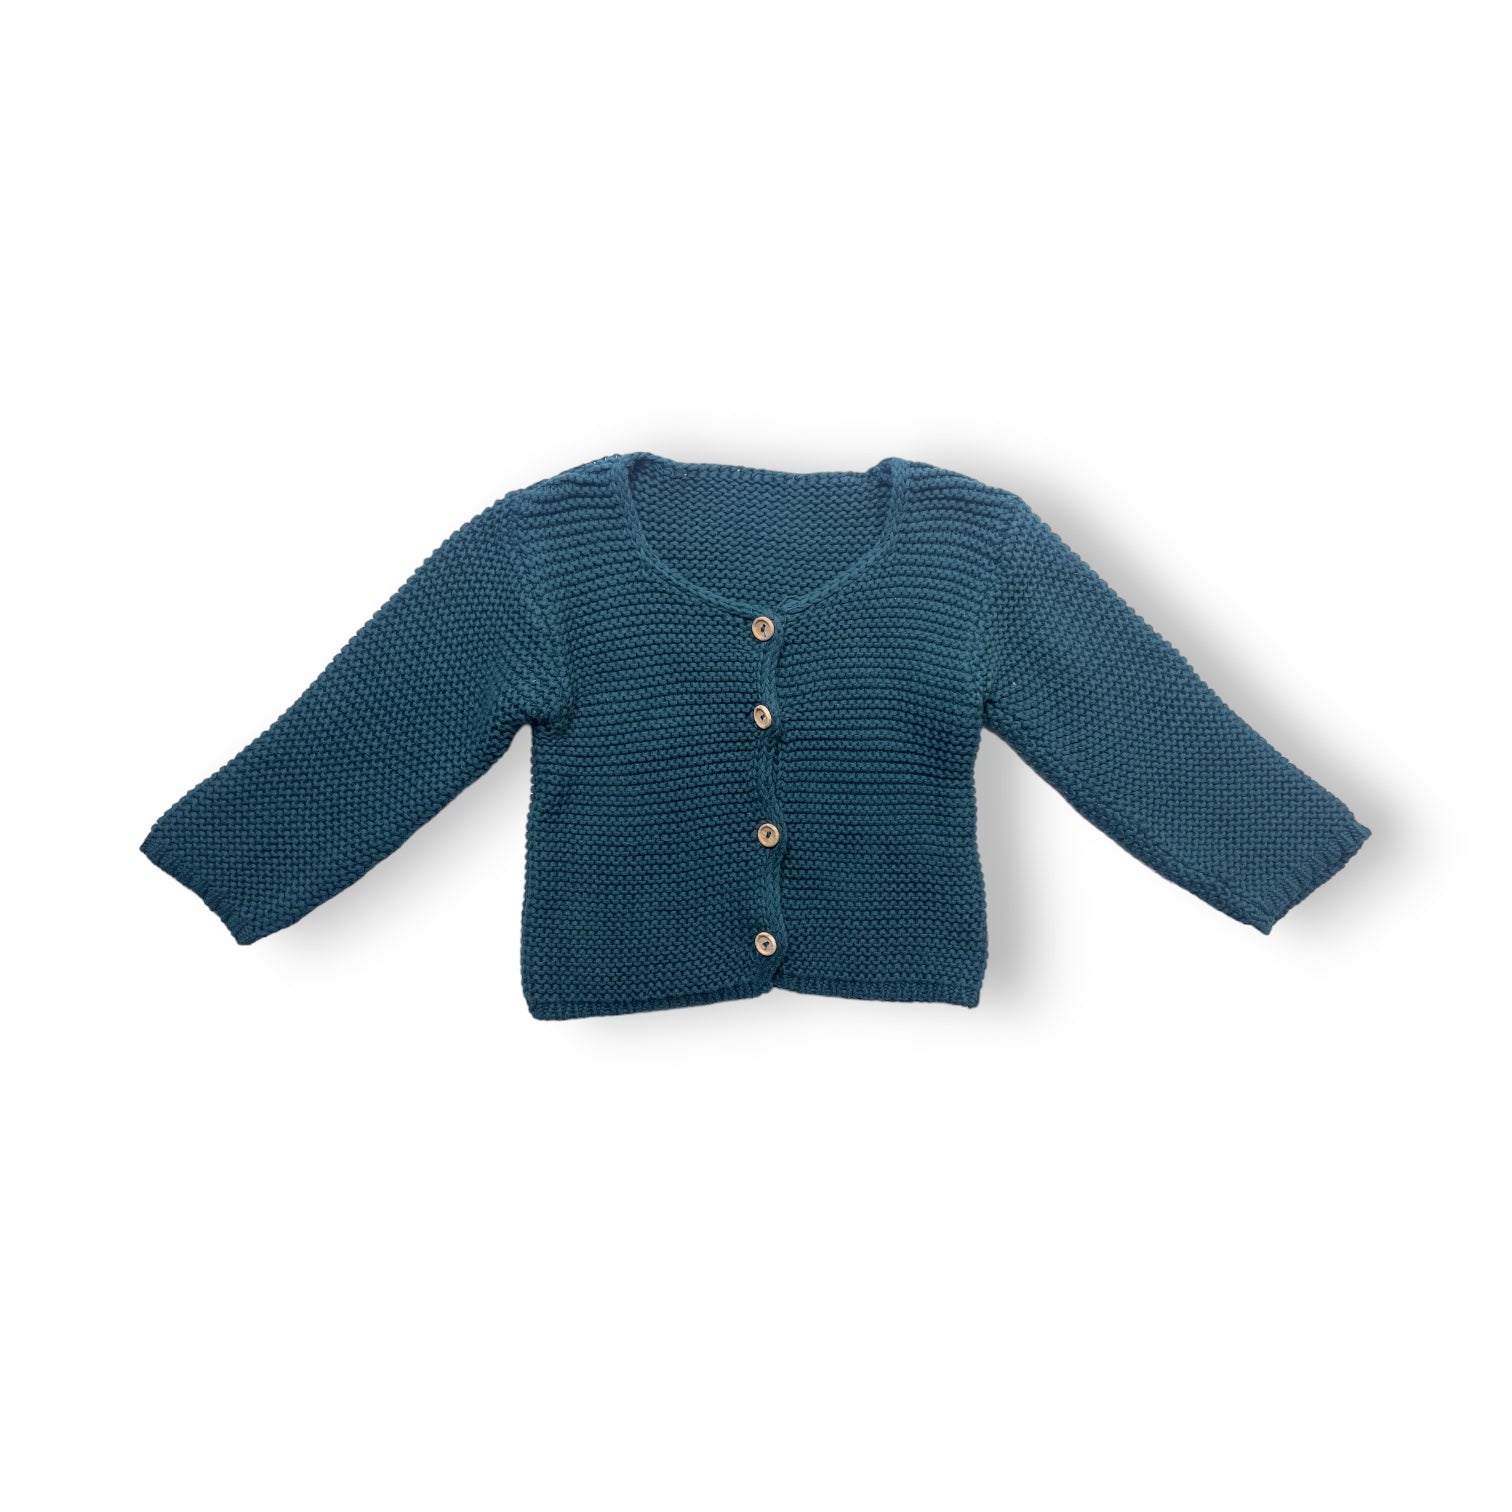 POUDRE ORGANIC - Cardigan vert sapin en crochet (neuf) - 18 mois